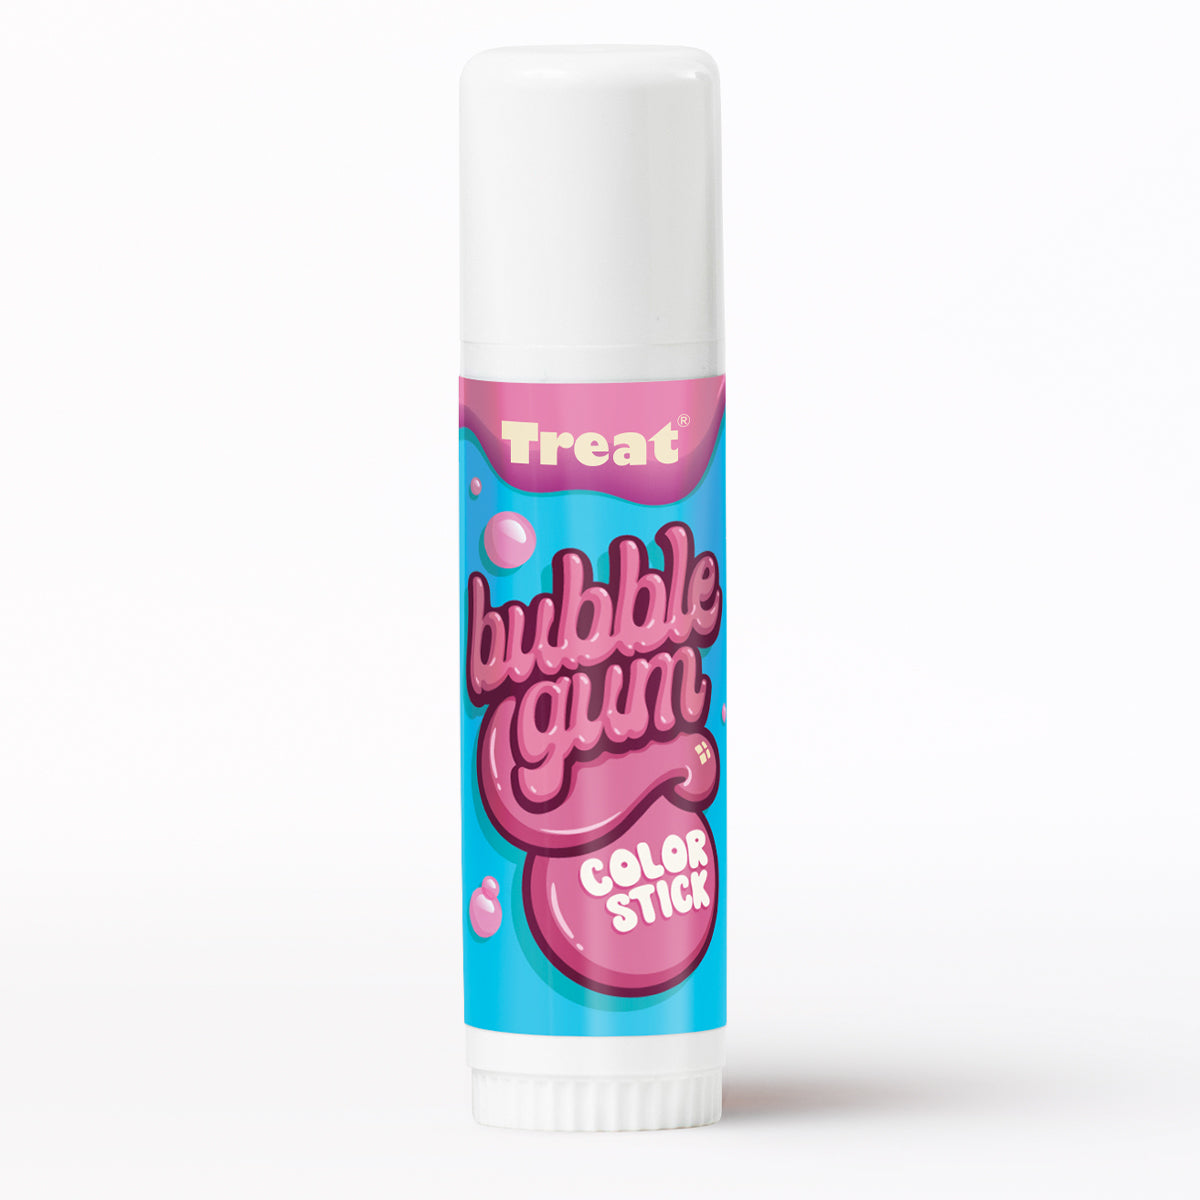 Treat Bubble Gum Color Stick